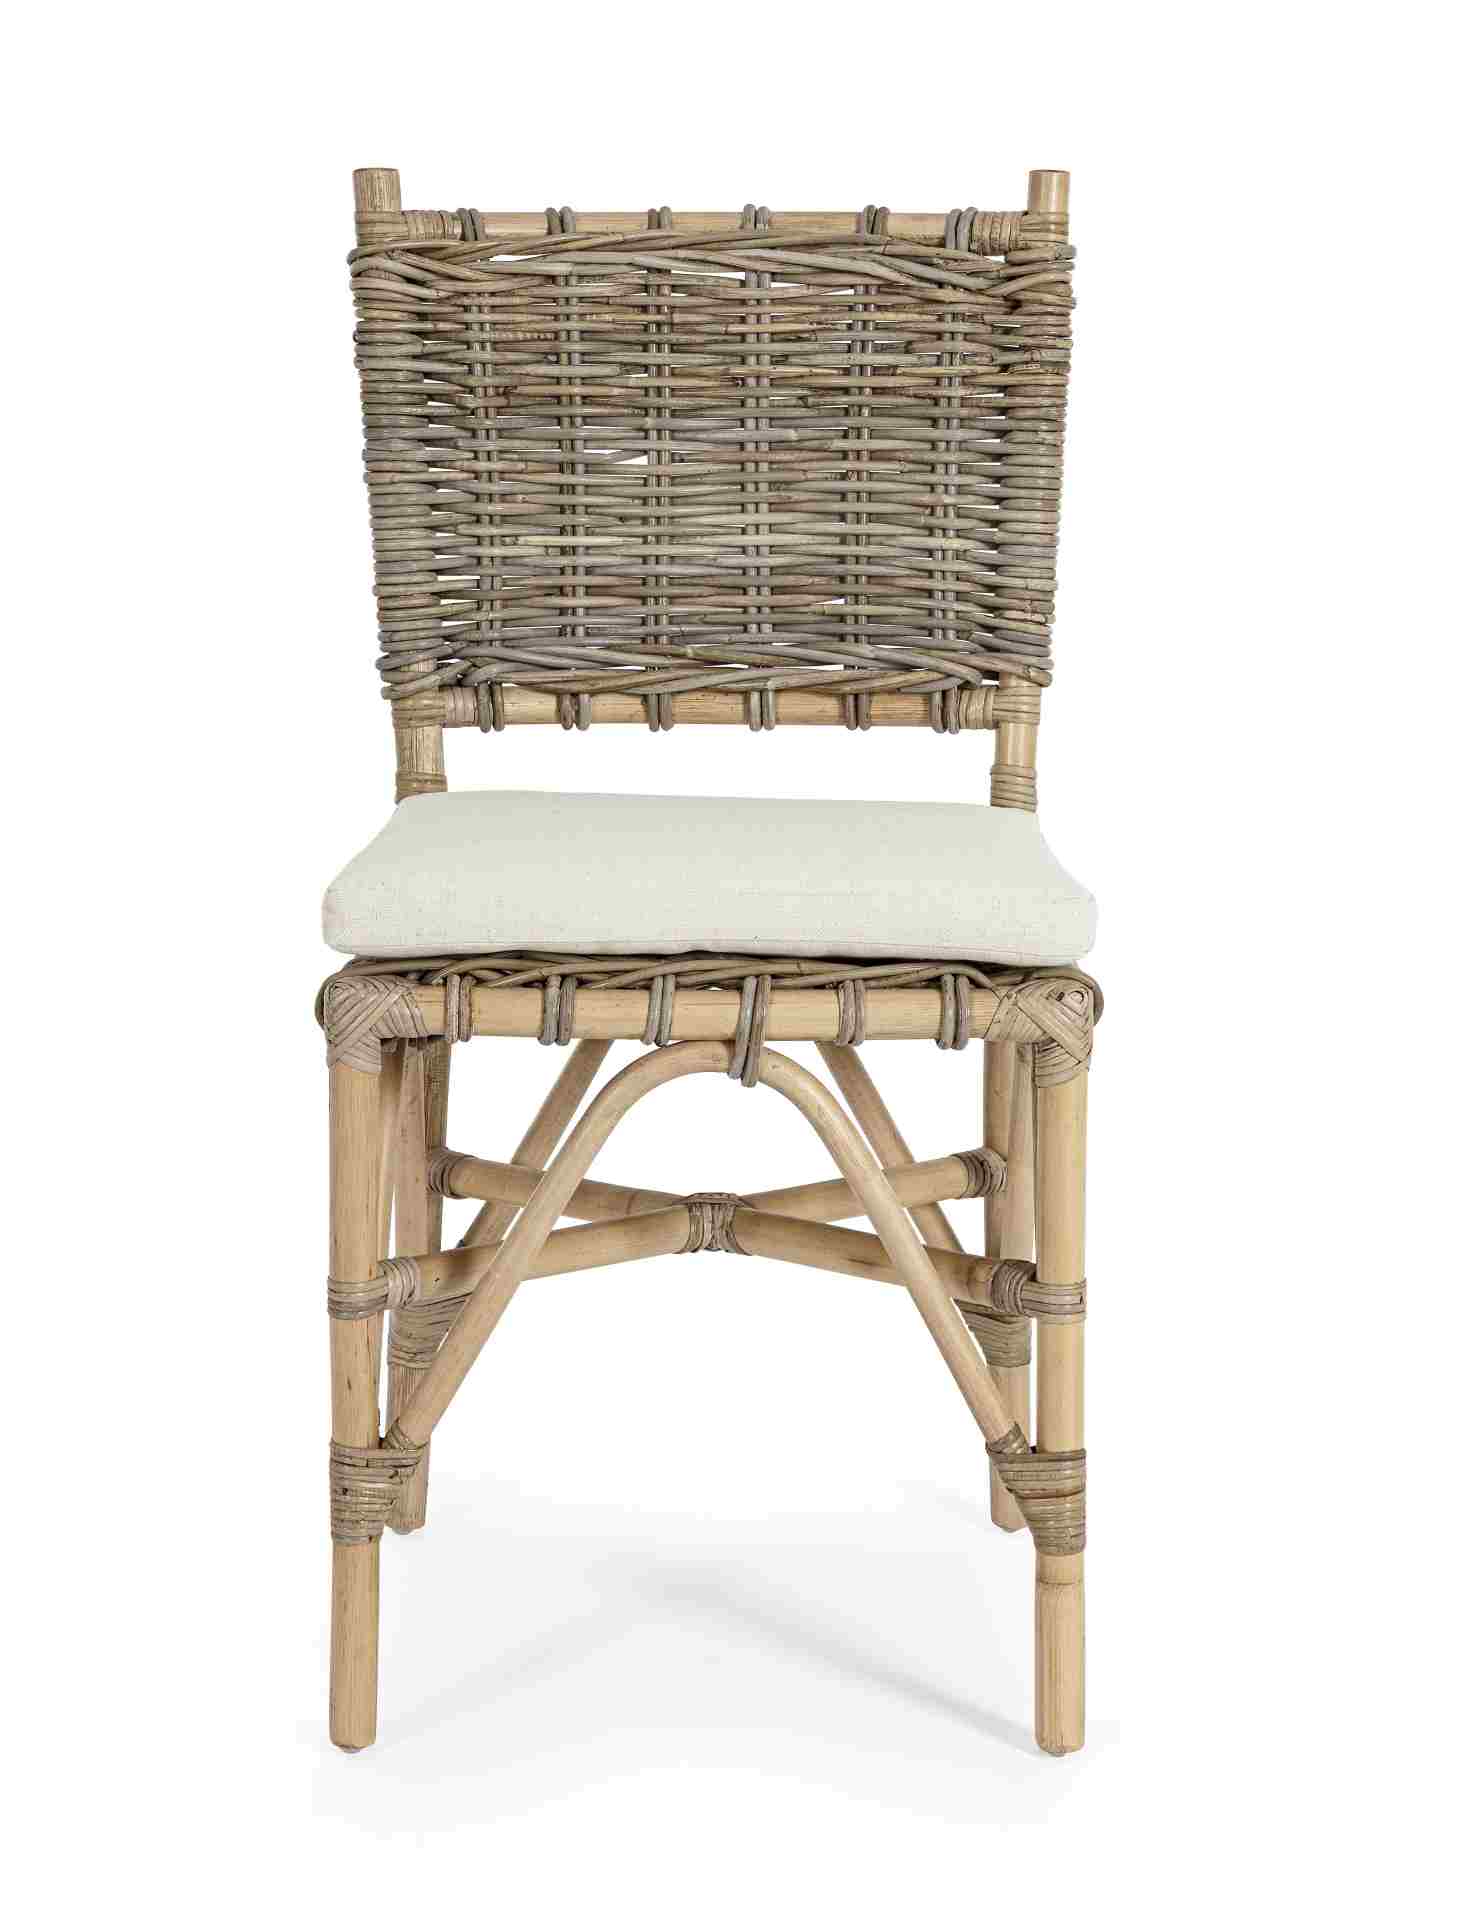 Der Gartenstuhl Tarifa überzeugt mit seinem klassischen Design. Gefertigt wurde er aus Kubu, welches einen braunen Farbton besitzt. Das Gestell ist aus Rattan und hat eine natürliche Farbe. Der Stuhl verfügt über eine Sitzhöhe von 52 cm und ist für den Ou